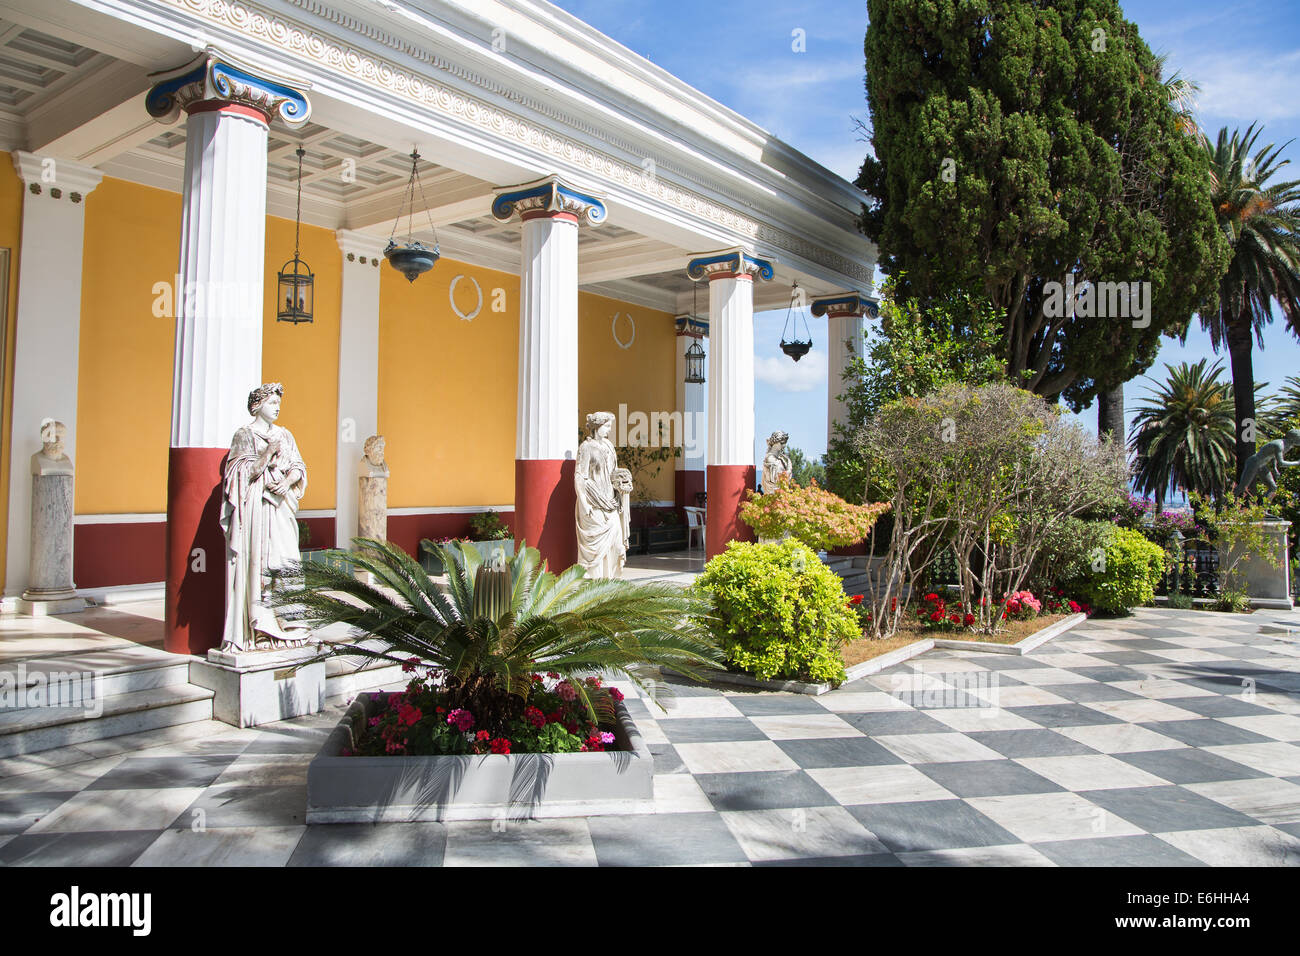 Visite turistiche a Corfù/Grecia: Castello di imperatrice Elisabetta II da Austria - residenza estiva. Foto Stock